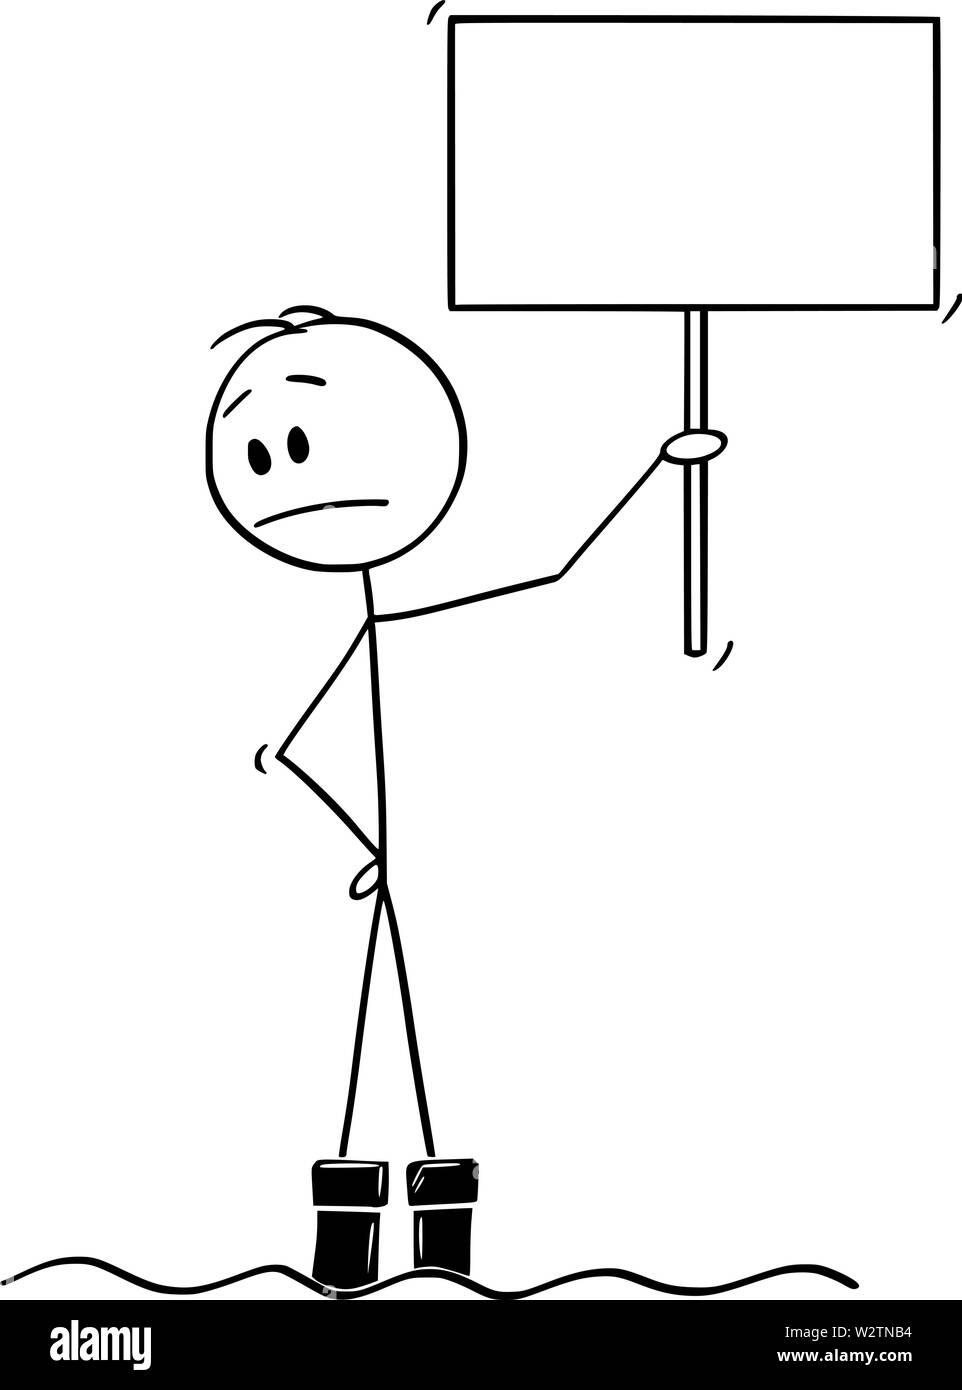 Vector cartoon stick figura disegno illustrazione concettuale dell'uomo in piedi con segno vuoto in acqua alluvione e guardando con preoccupazione come l'acqua continua a salire. Illustrazione Vettoriale